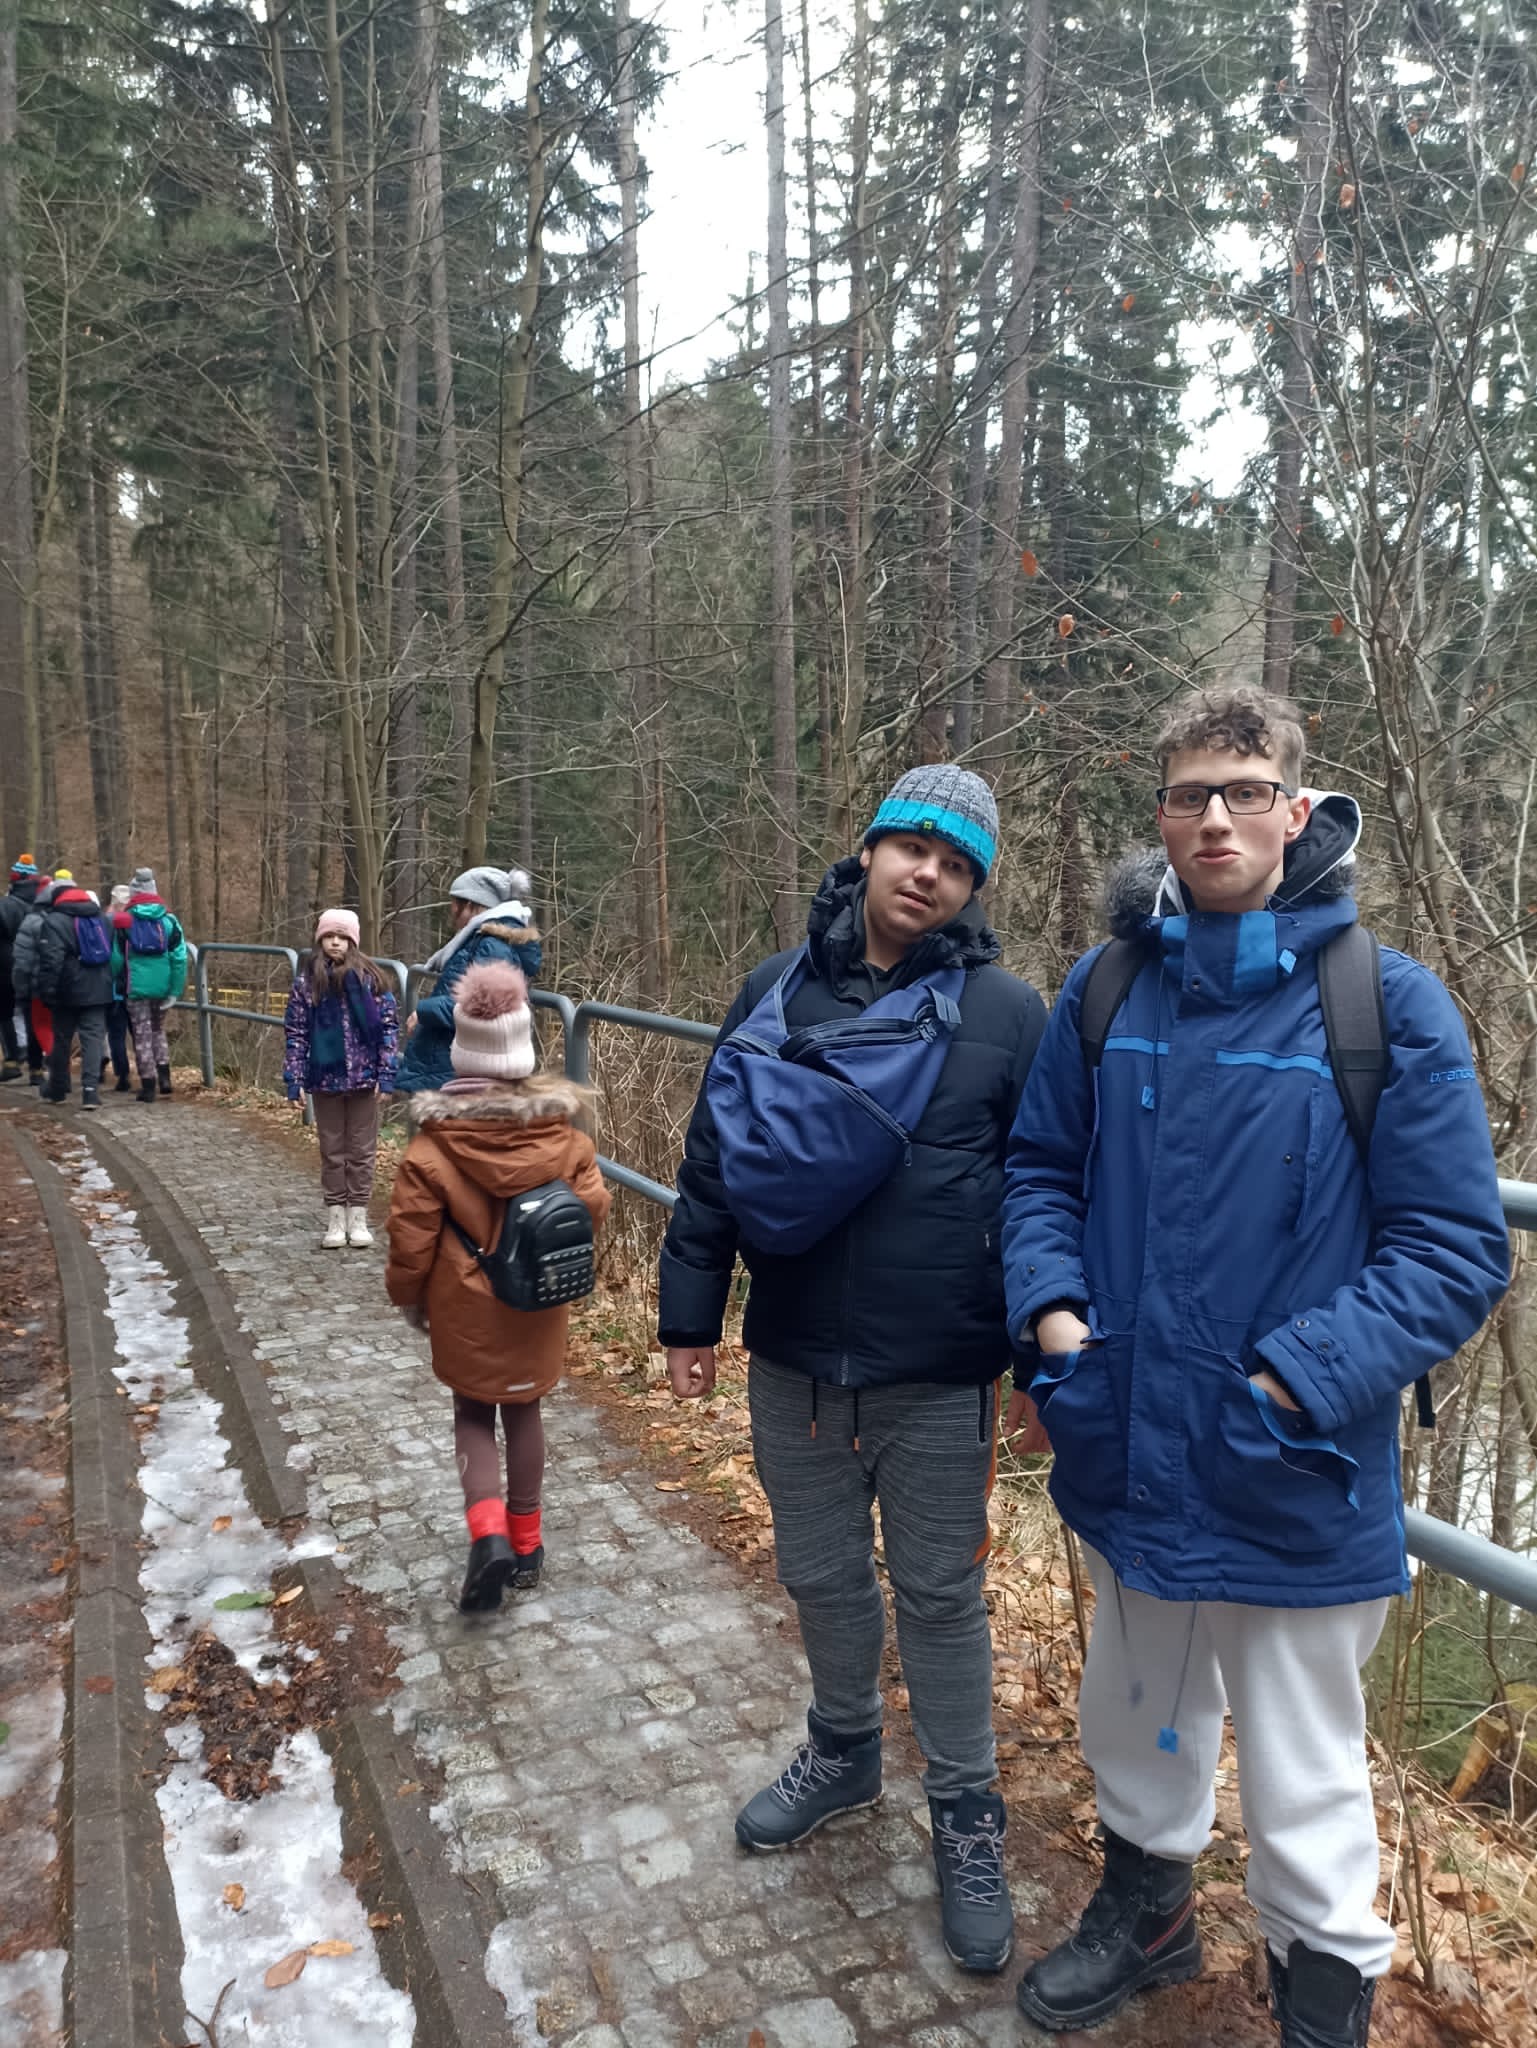 Na ścieżce w lesie znajduje się grupa osób 